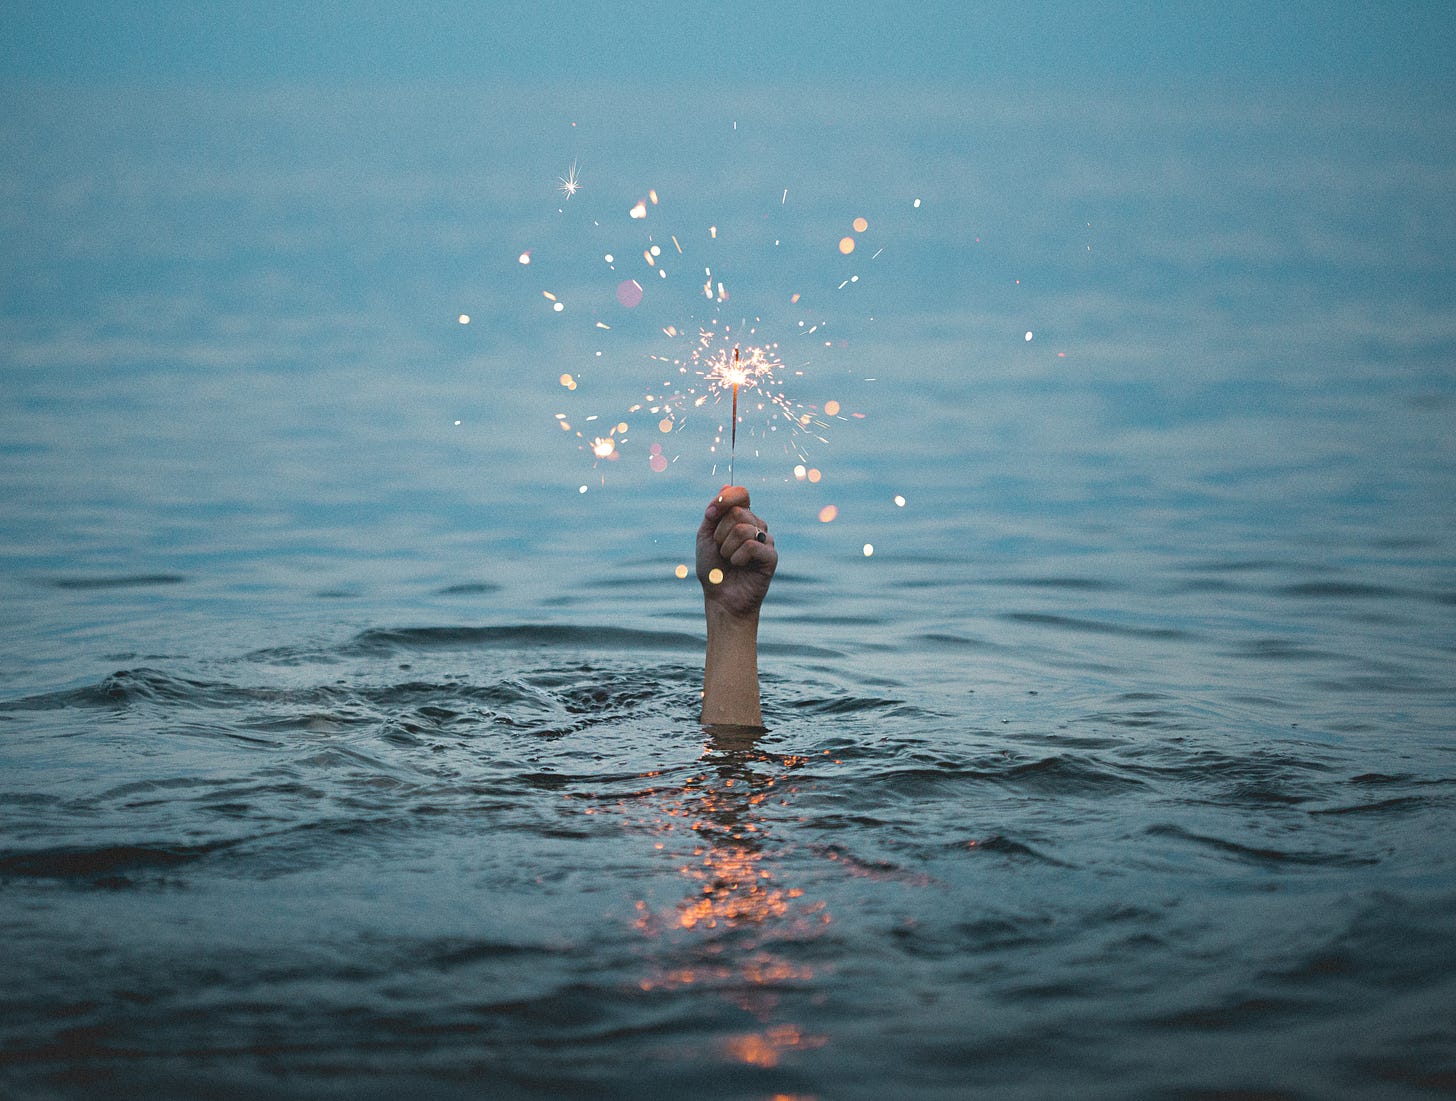 Mano che spunta dalla superficie del mare reggendo una candelina che fa scintille, tipo fuoco d'artificio.